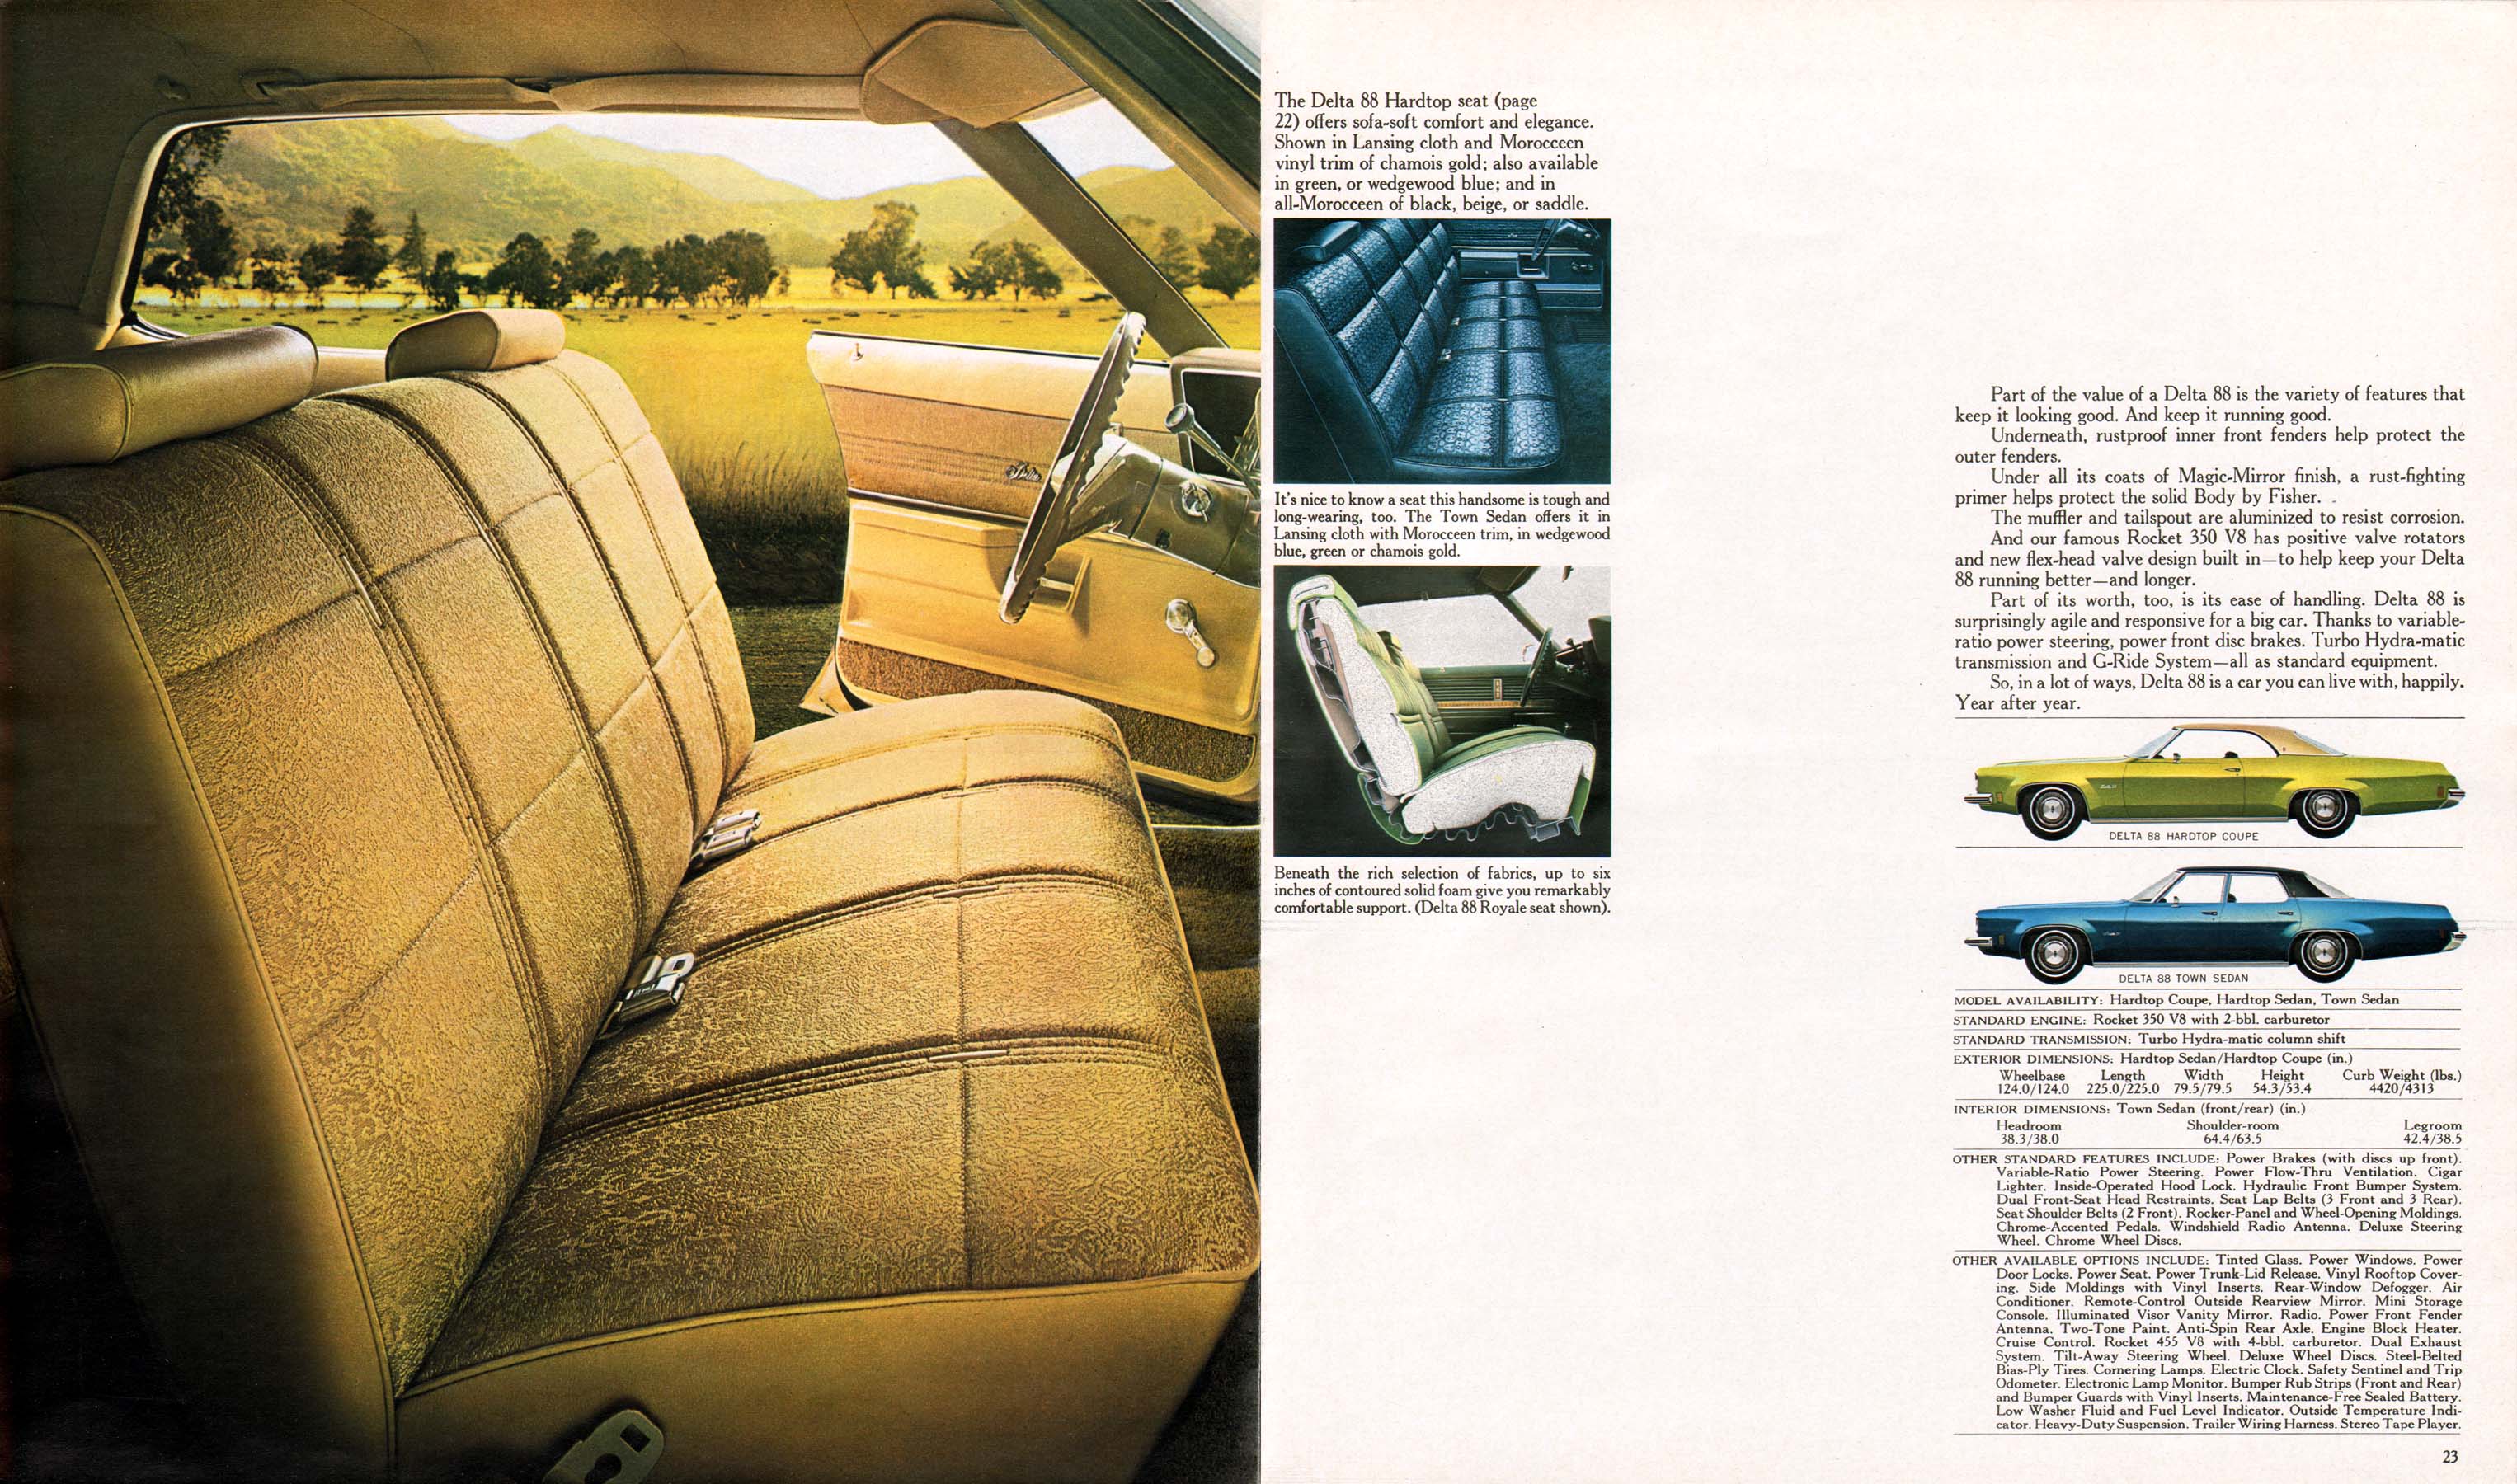 1973_Oldsmobile_Full_Line-22-23